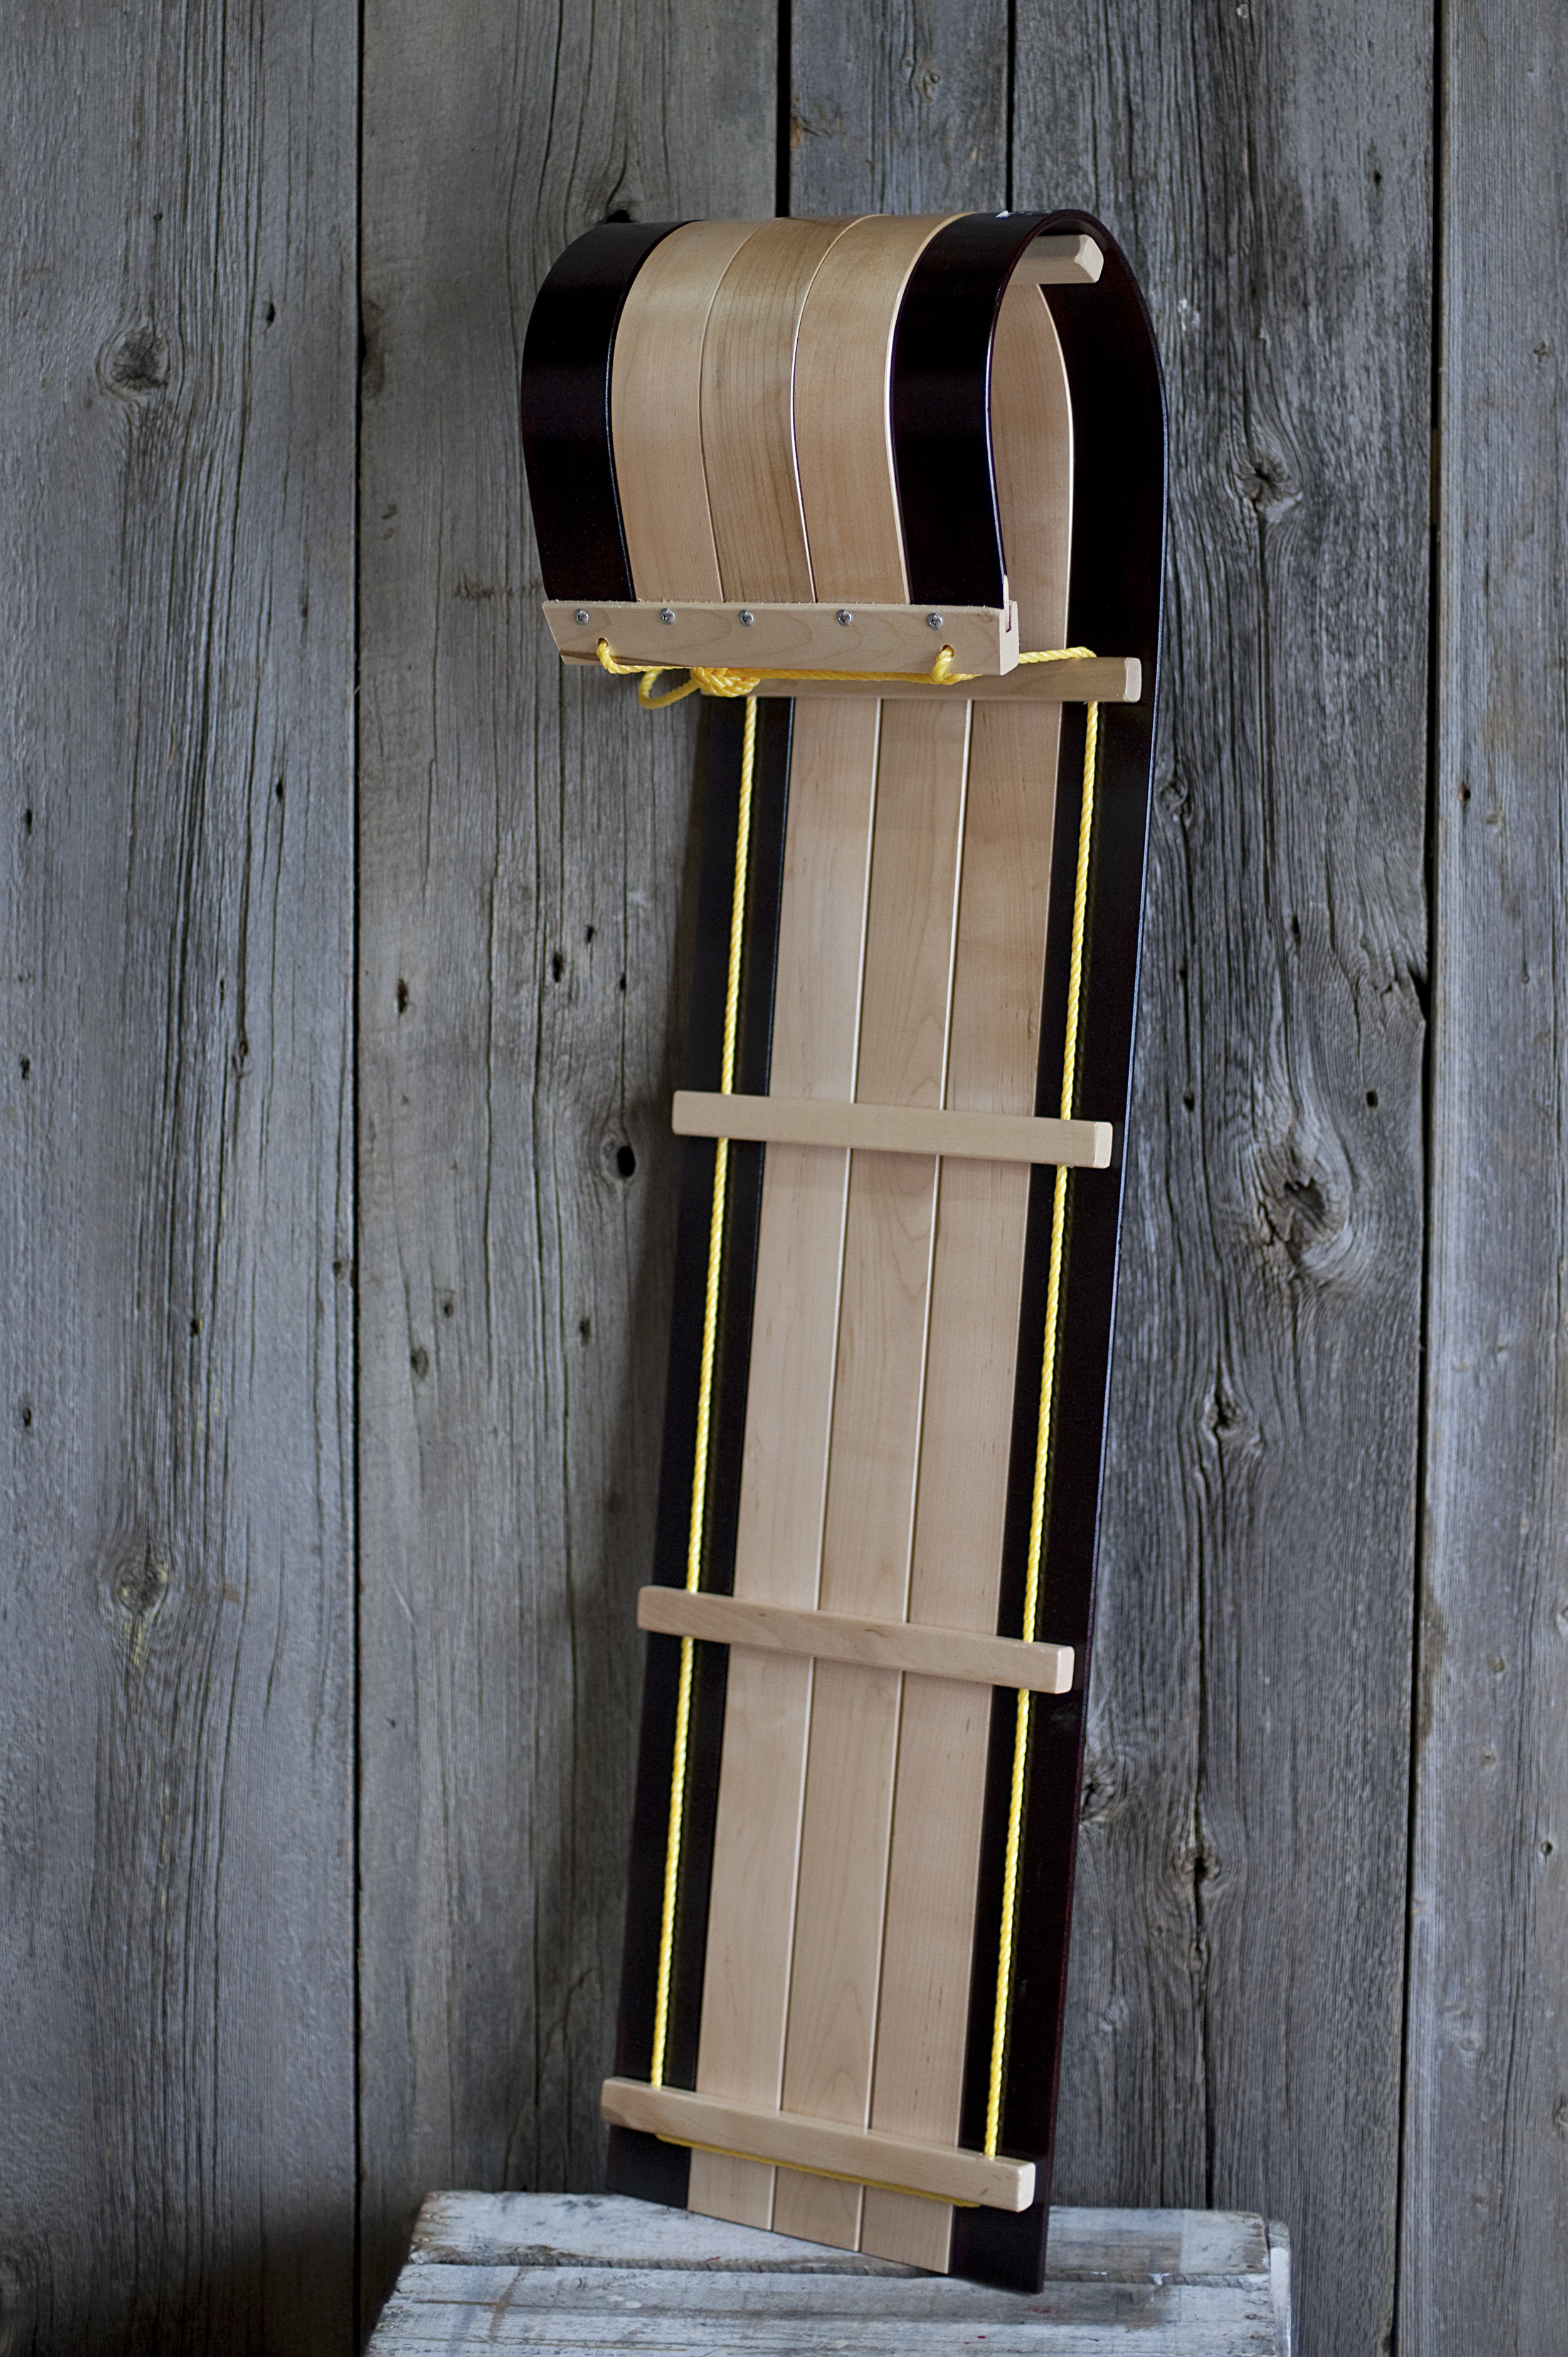 Details about   Wooden toboggan sled 